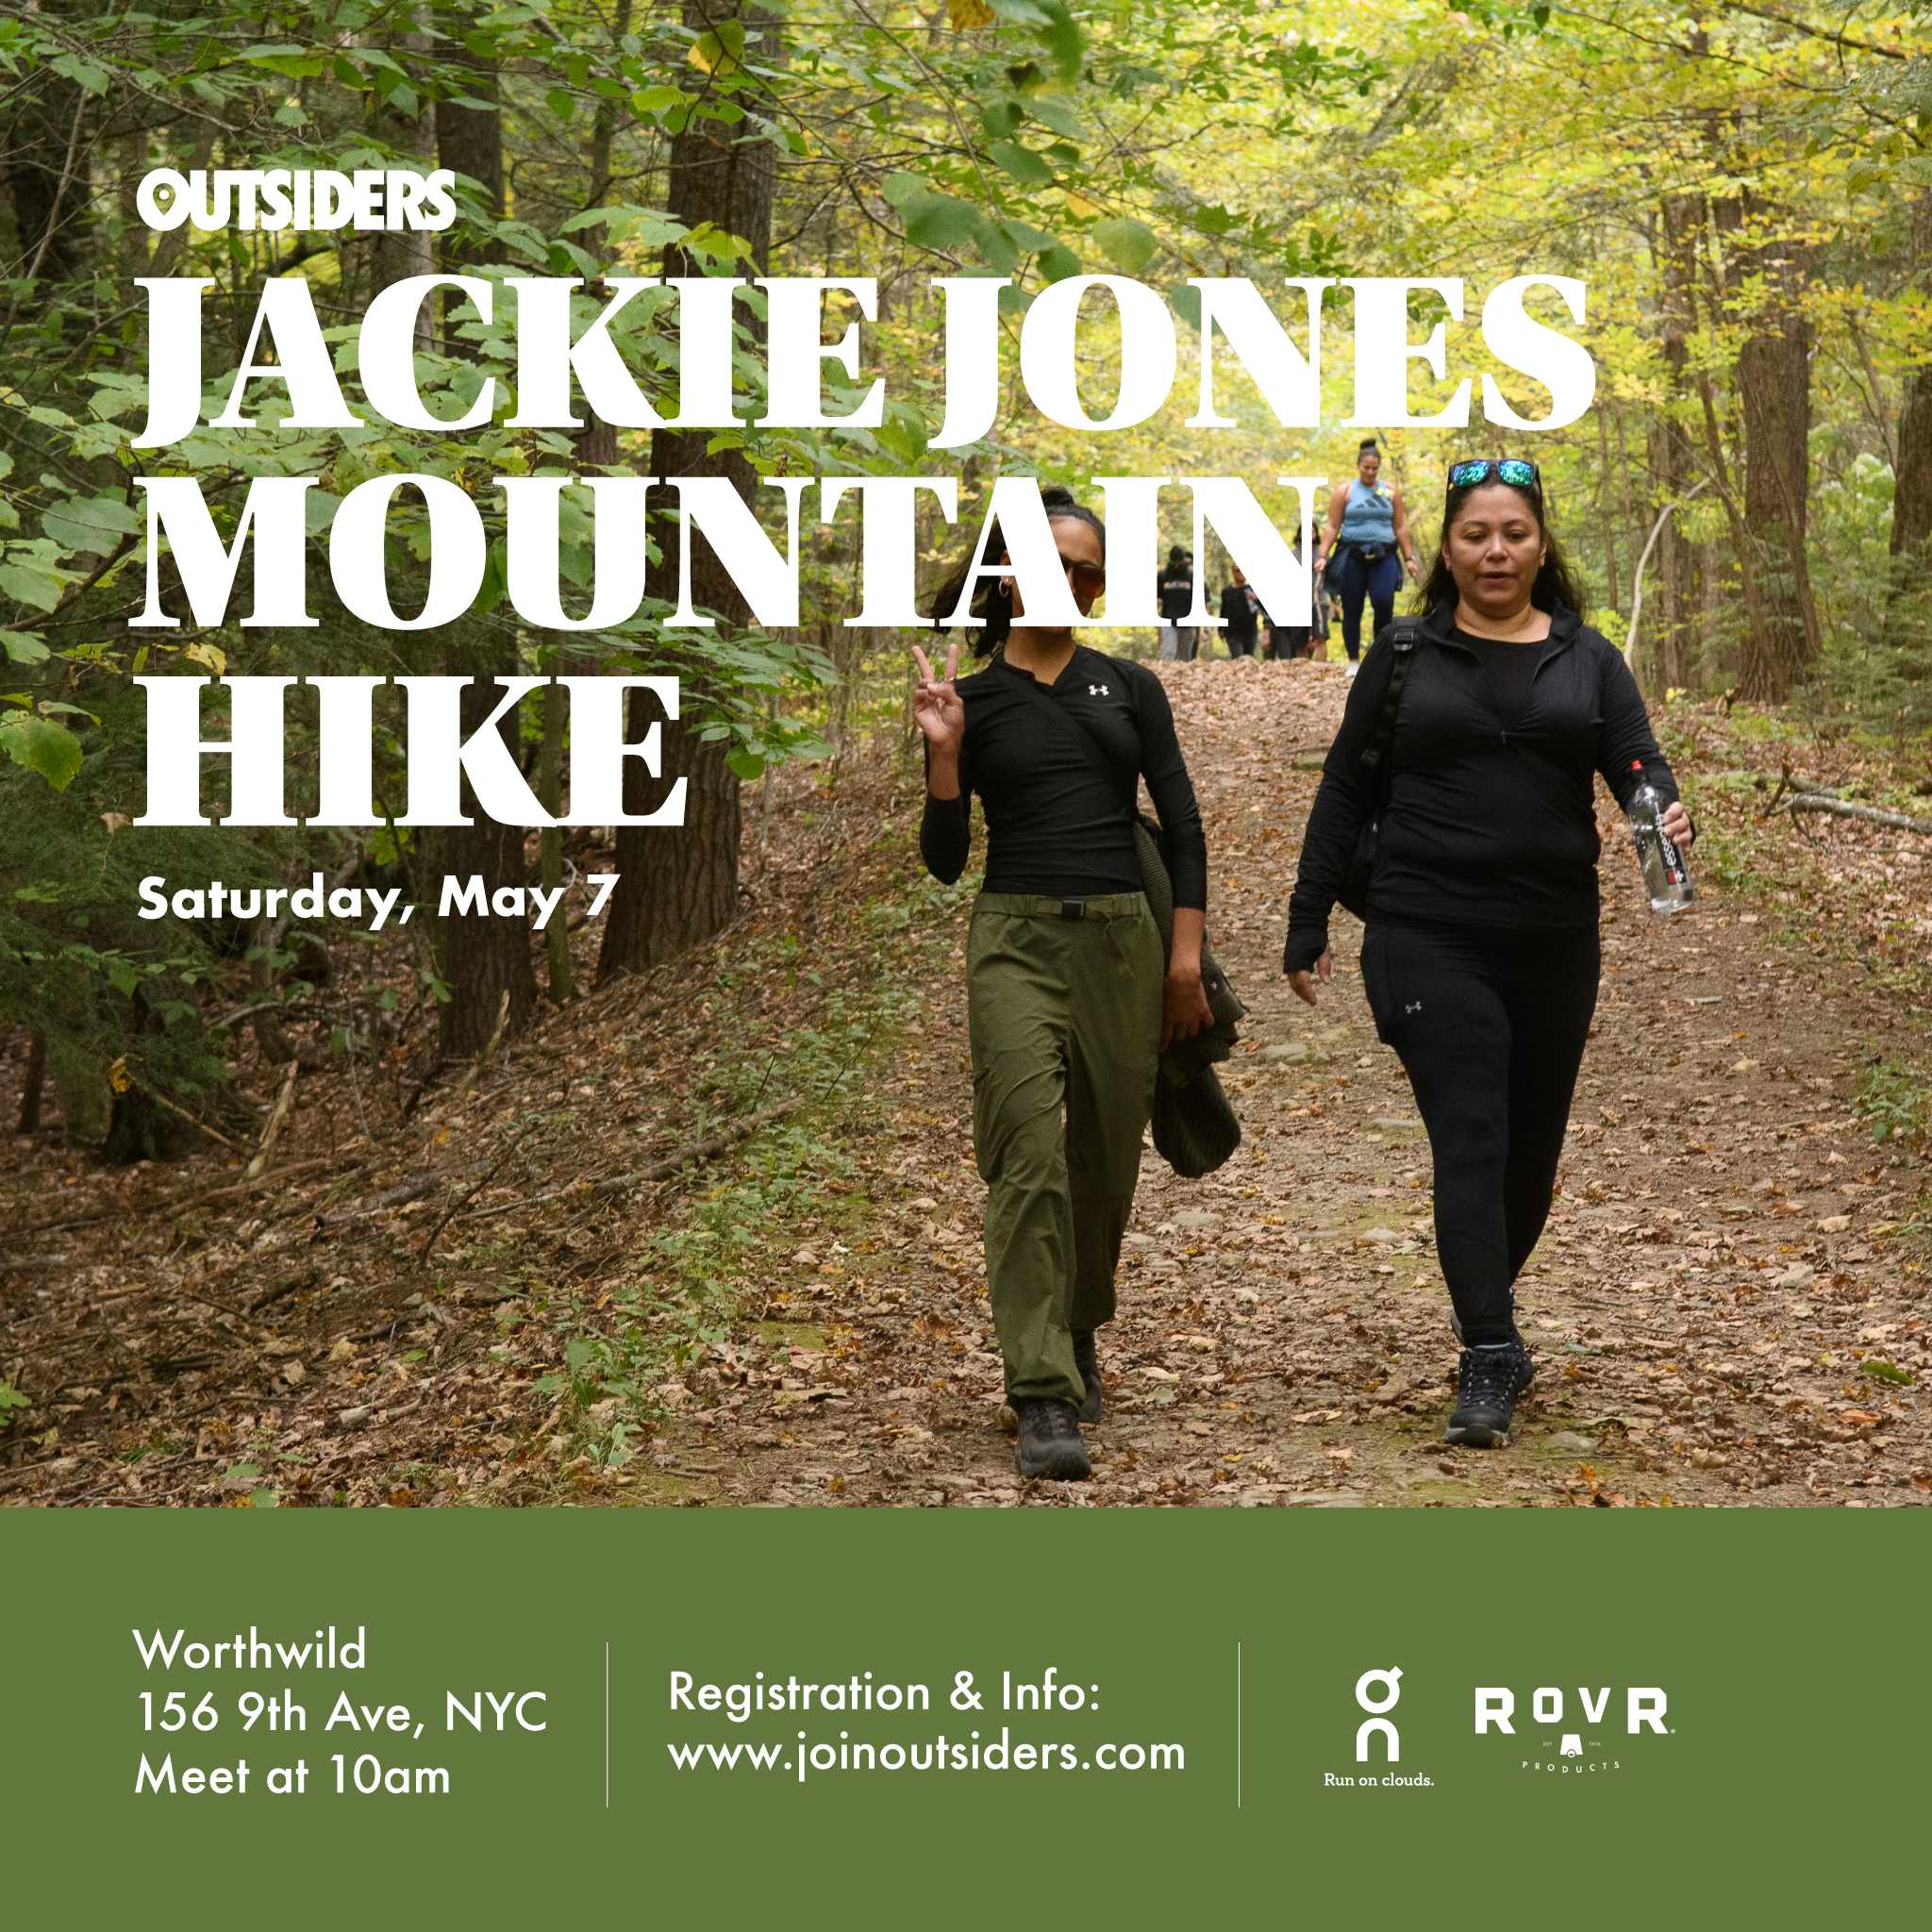 Jackie Jones Mt.Hike